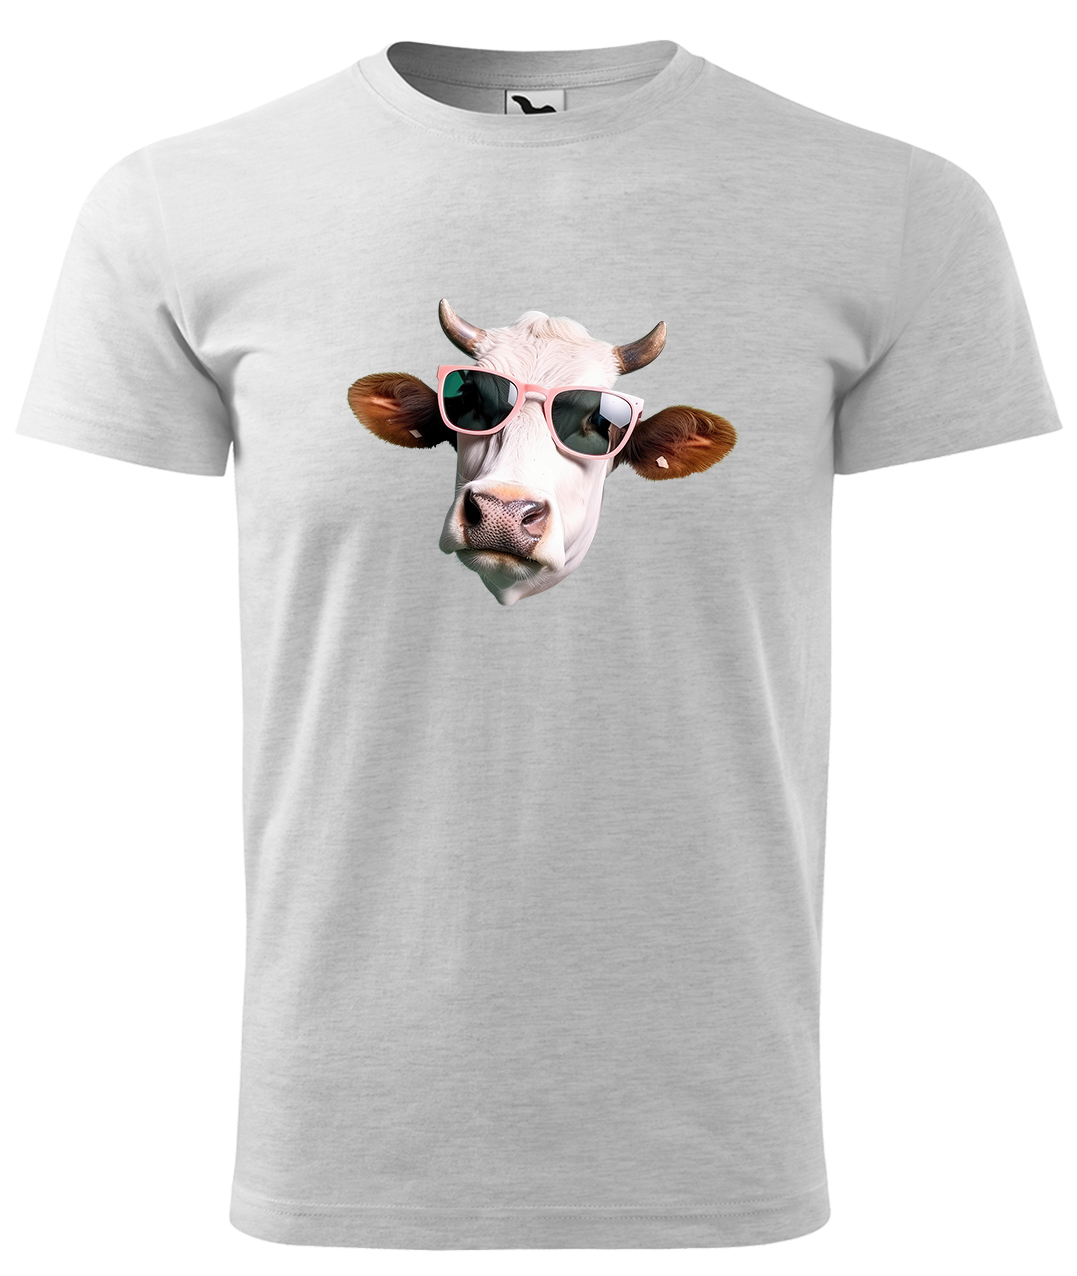 Dětské tričko s krávou - Kráva v brýlích Velikost: 10 let / 146 cm, Barva: Světle šedý melír (03), Délka rukávu: Krátký rukáv